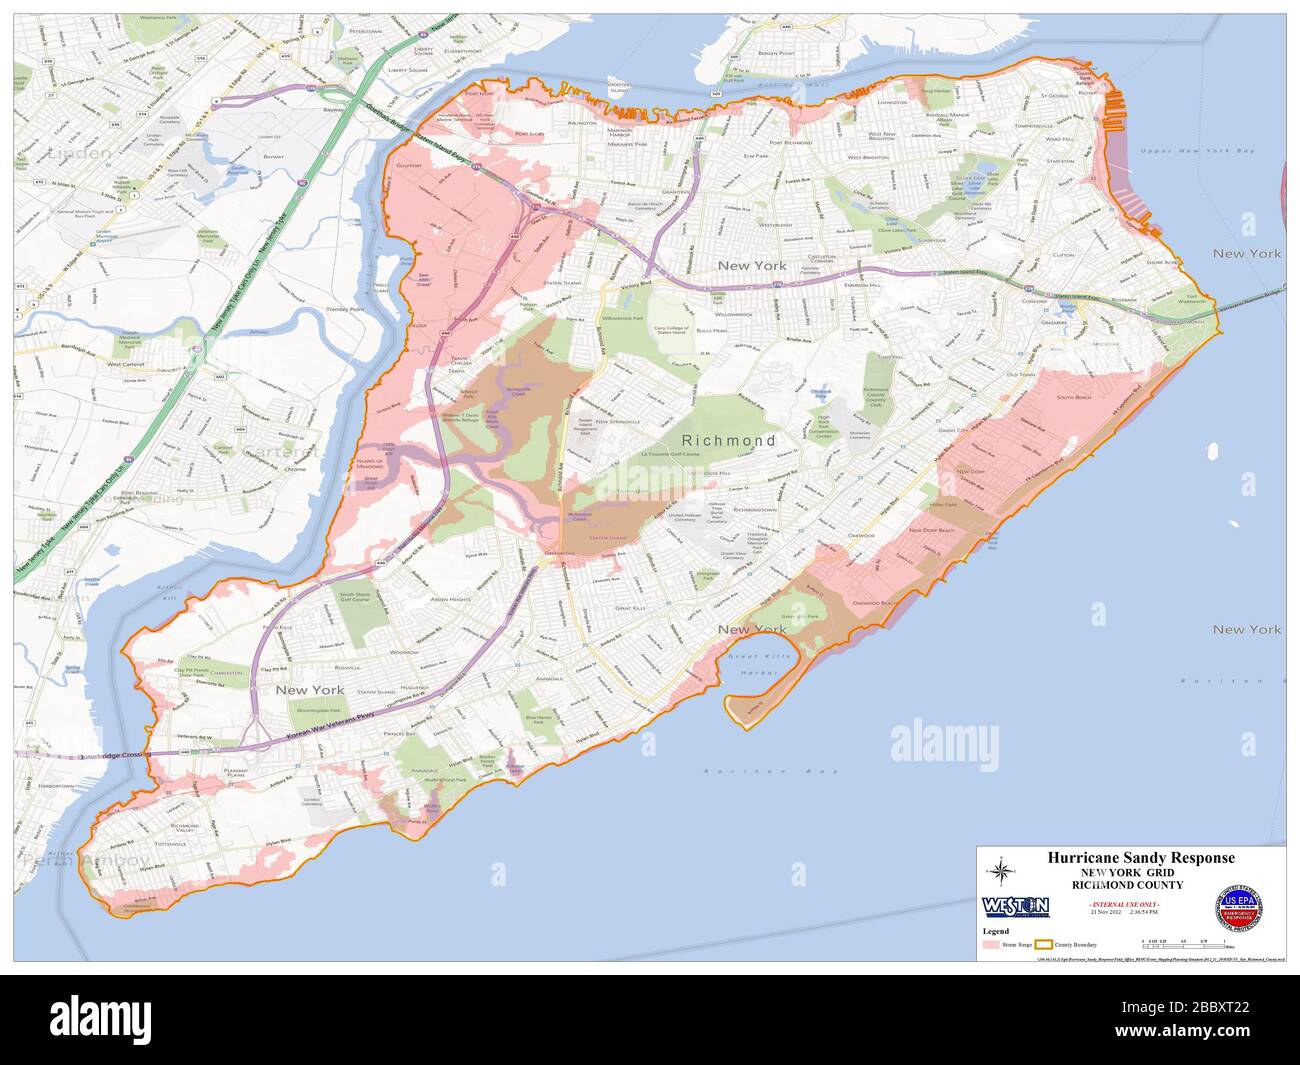 EPA Hurricane Sandy Response - luoghi di raccolta rifiuti pericolosi Hurricane Sandy - Mappa della contea di Richmond Foto Stock